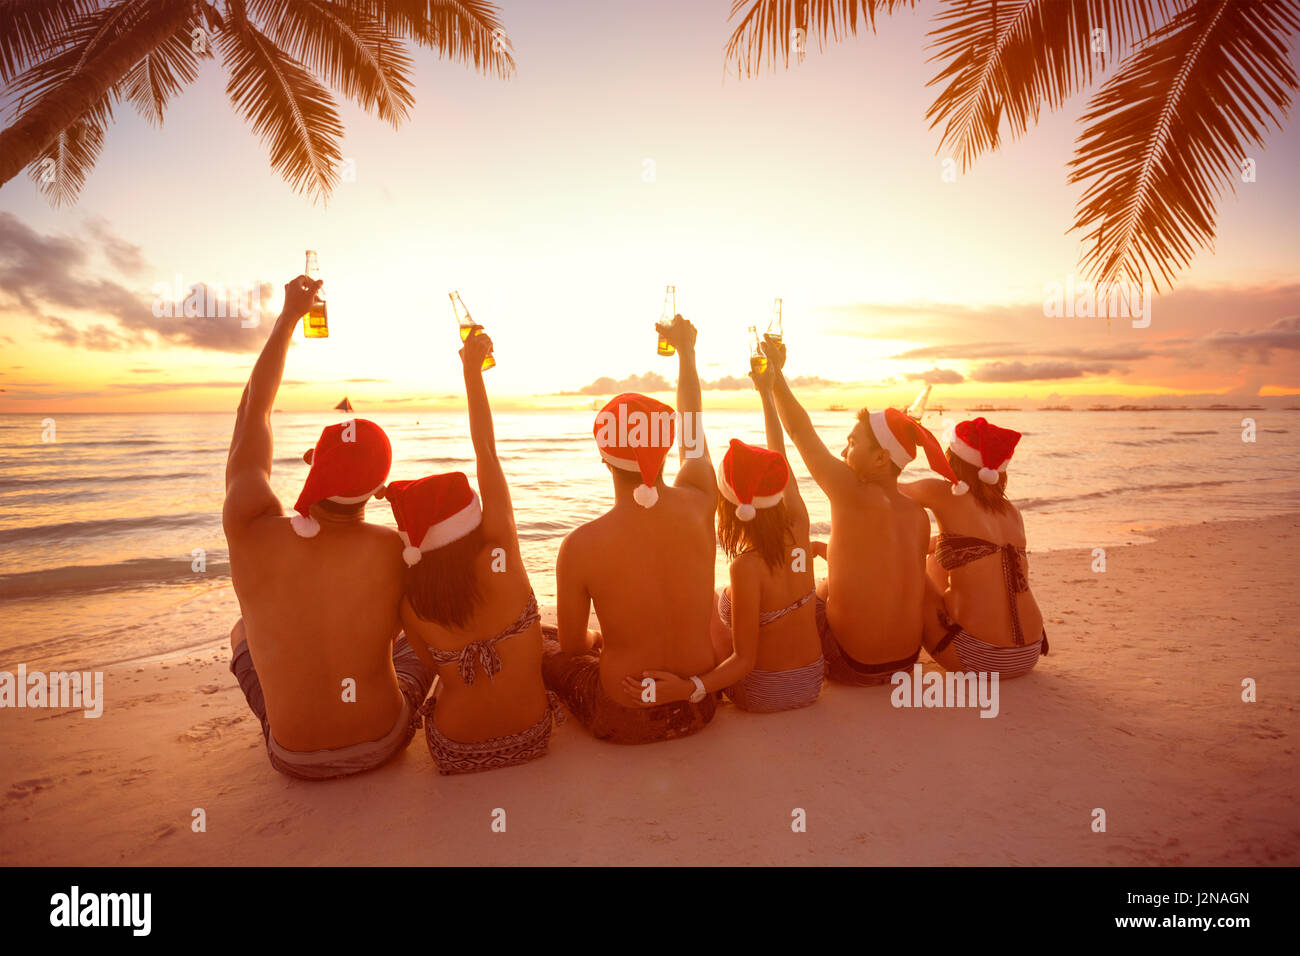 Vista posterior del grupo las personas con manos levantadas sosteniendo una botella de cerveza en la playa, durante las vacaciones de Navidad Foto de stock